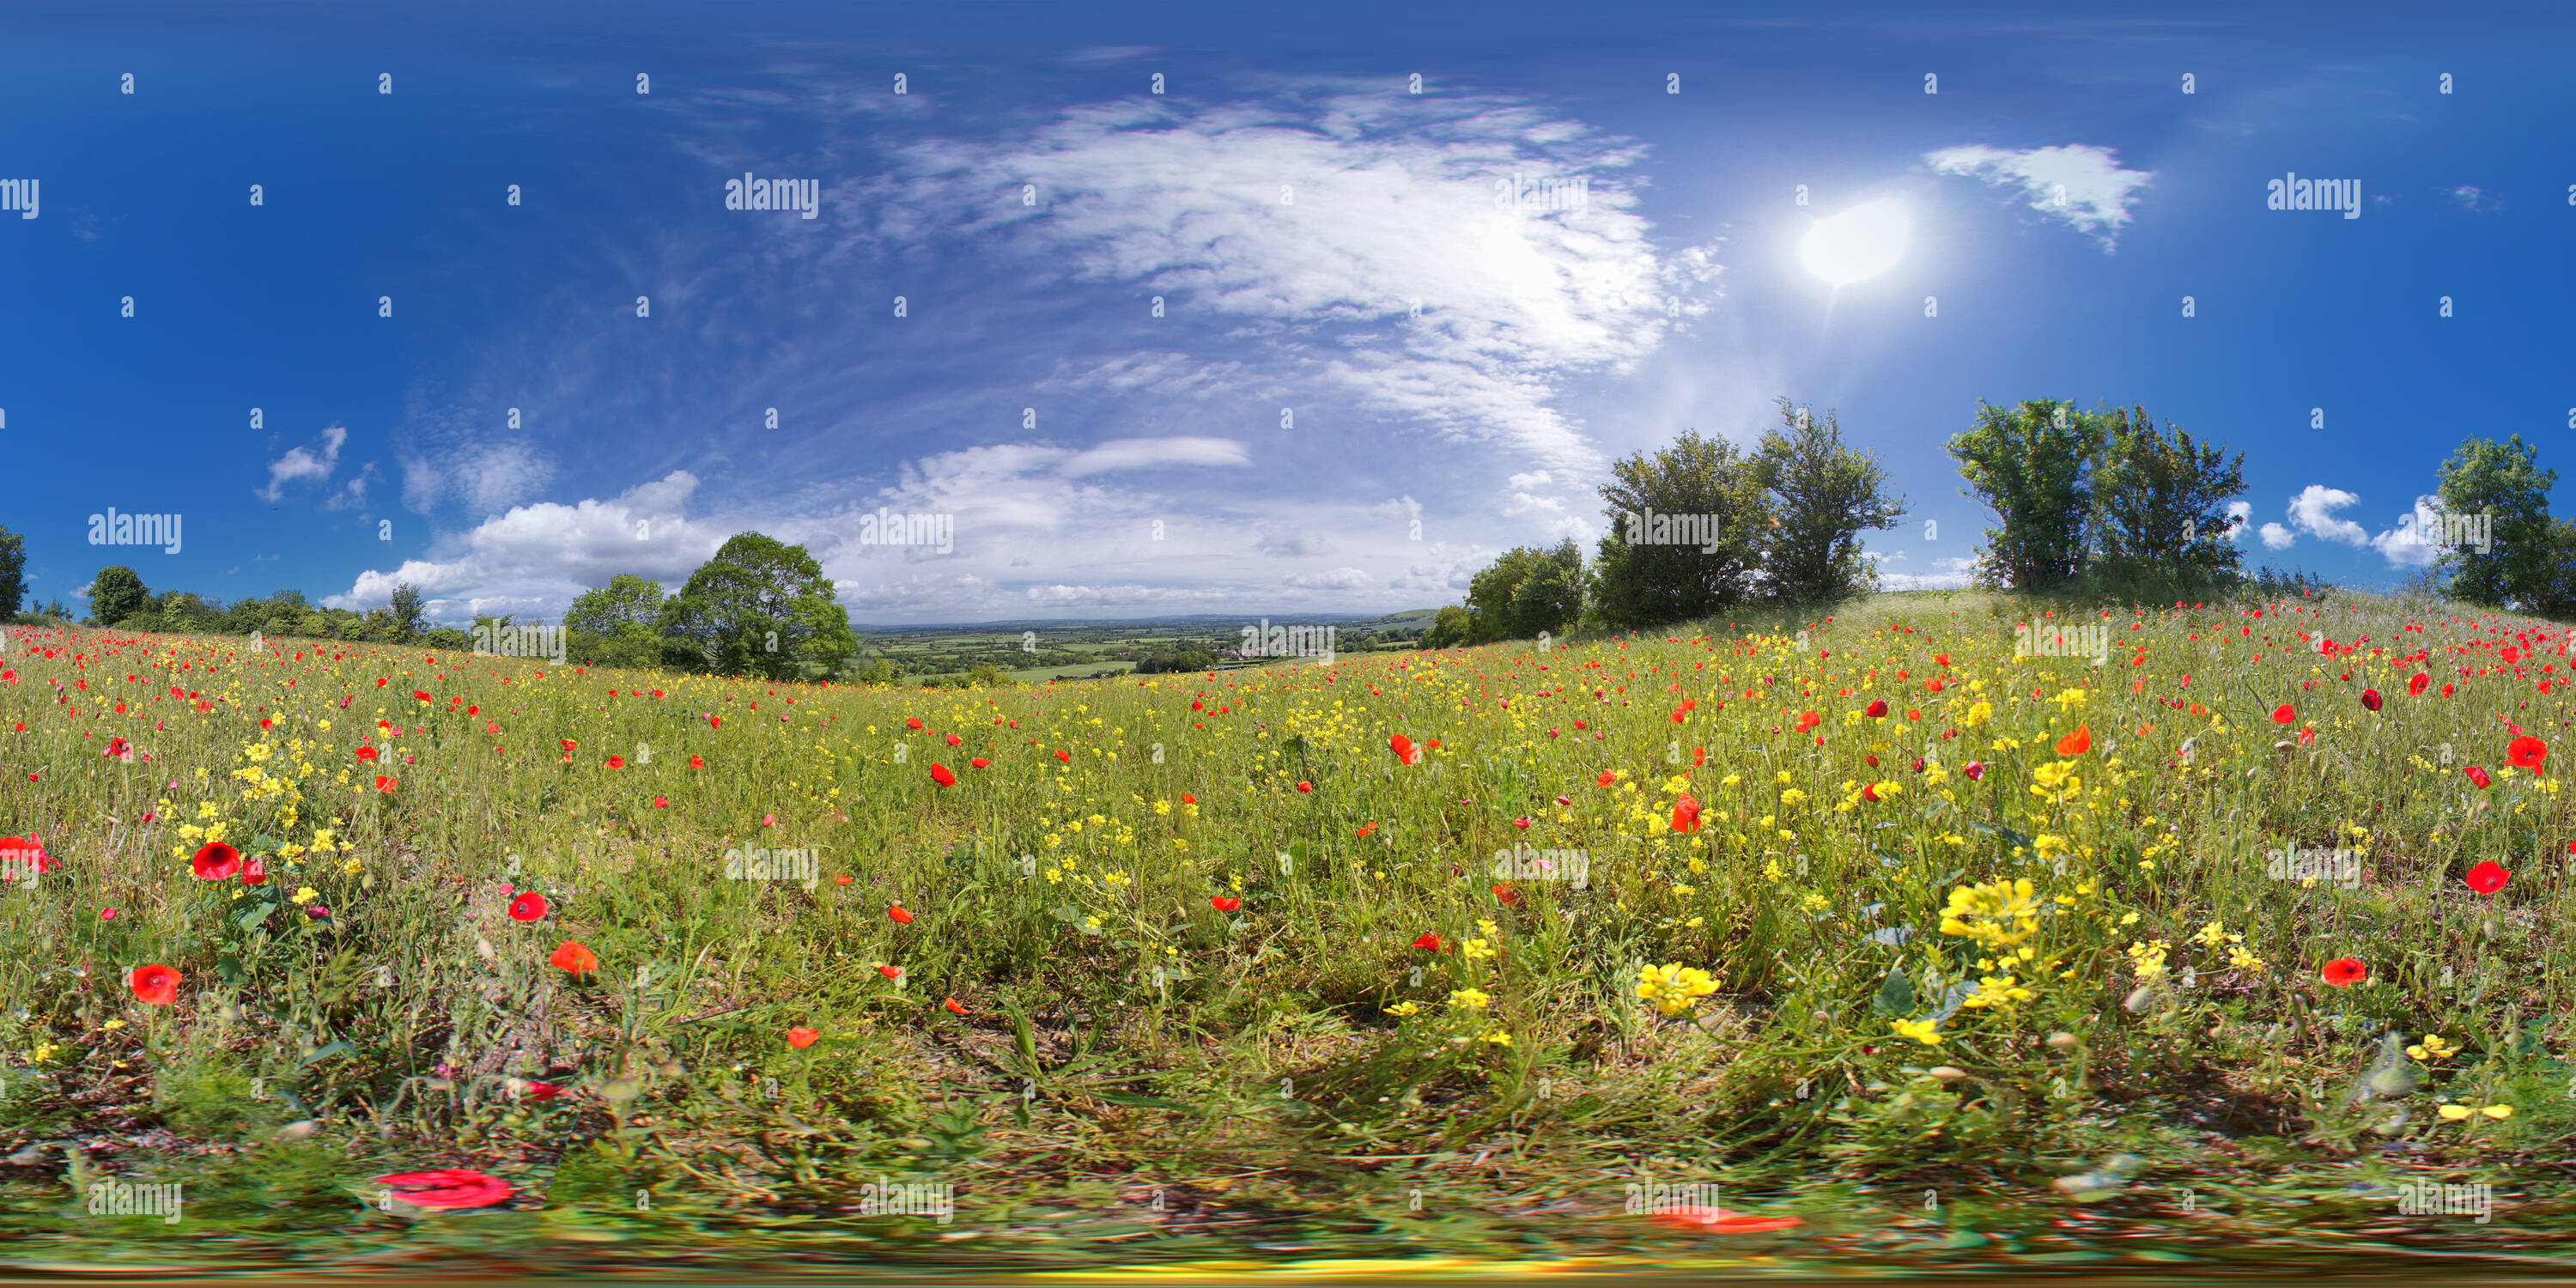 360 Grad Panorama Ansicht von Salisbury Plain. Wilde Blumenwiese. VR